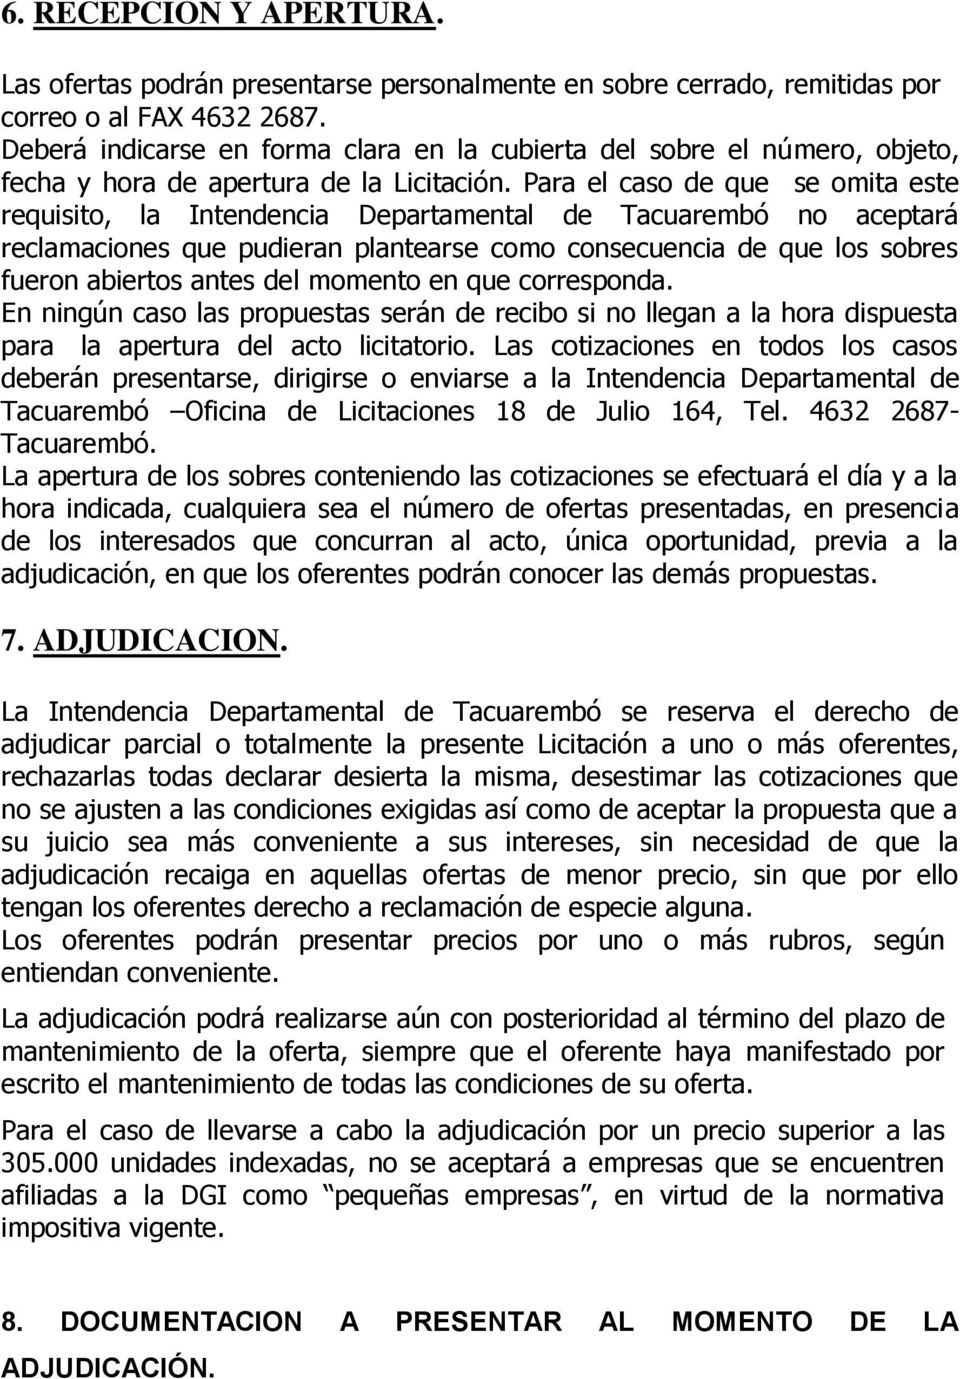 Para el caso de que se omita este requisito, la Intendencia Departamental de Tacuarembó no aceptará reclamaciones que pudieran plantearse como consecuencia de que los sobres fueron abiertos antes del